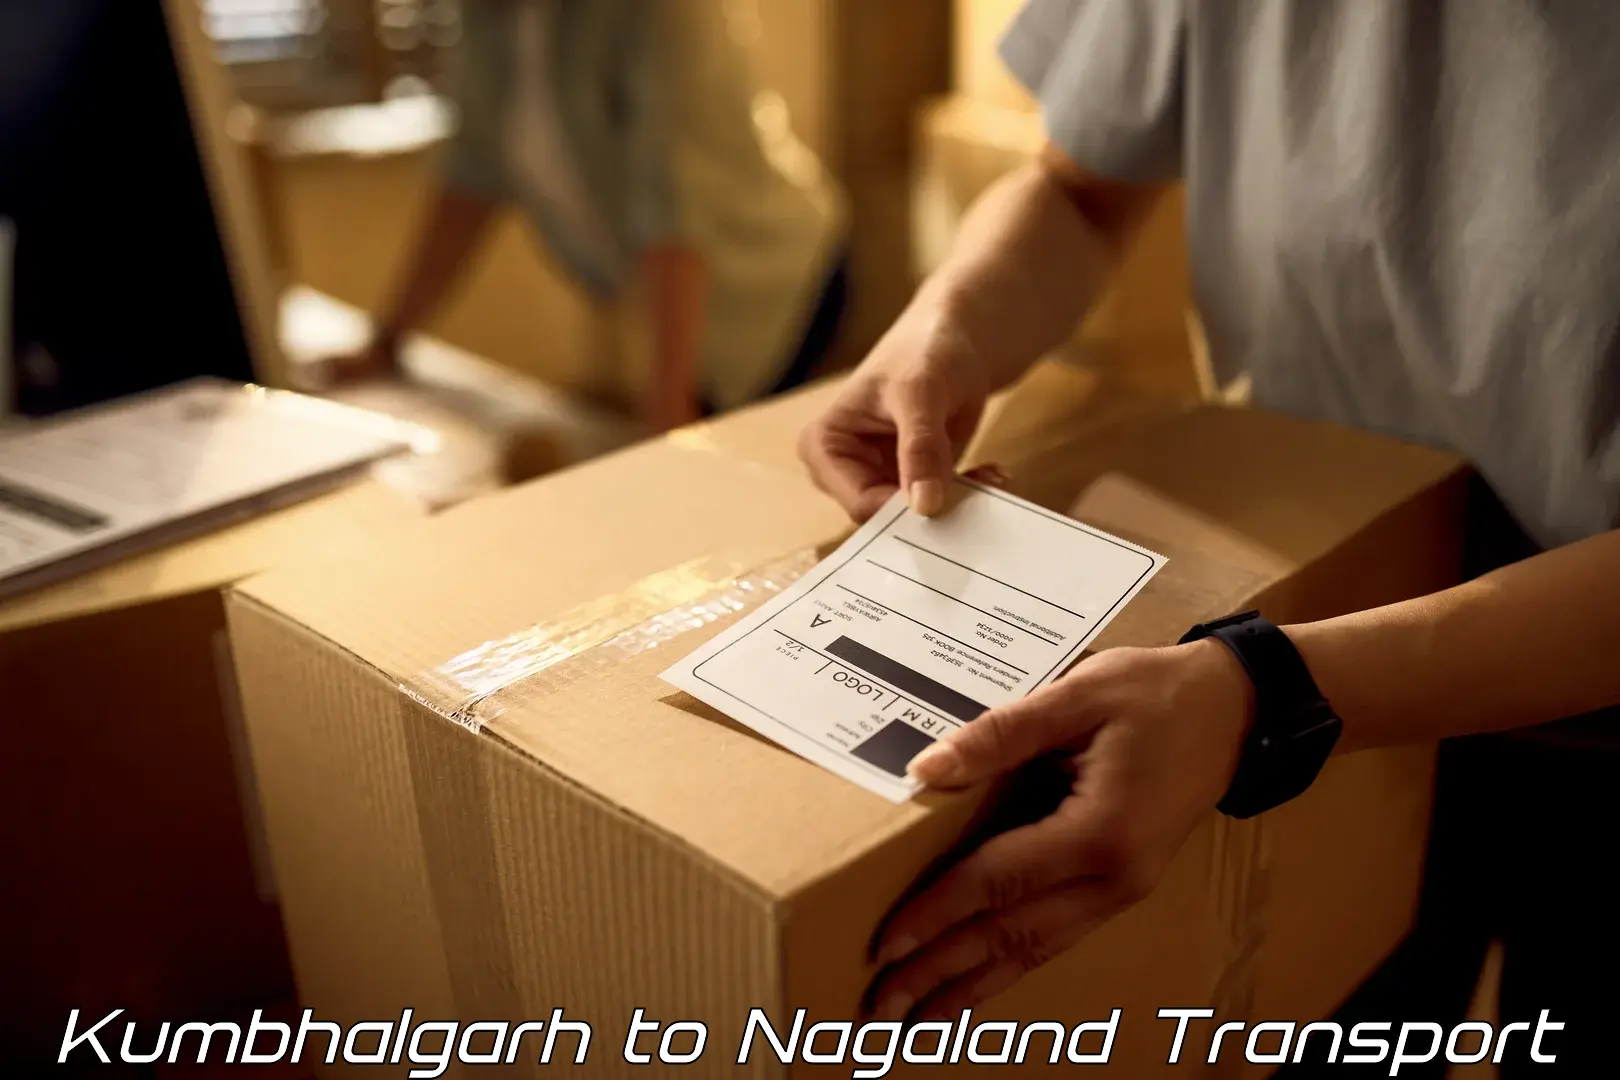 Shipping partner Kumbhalgarh to NIT Nagaland